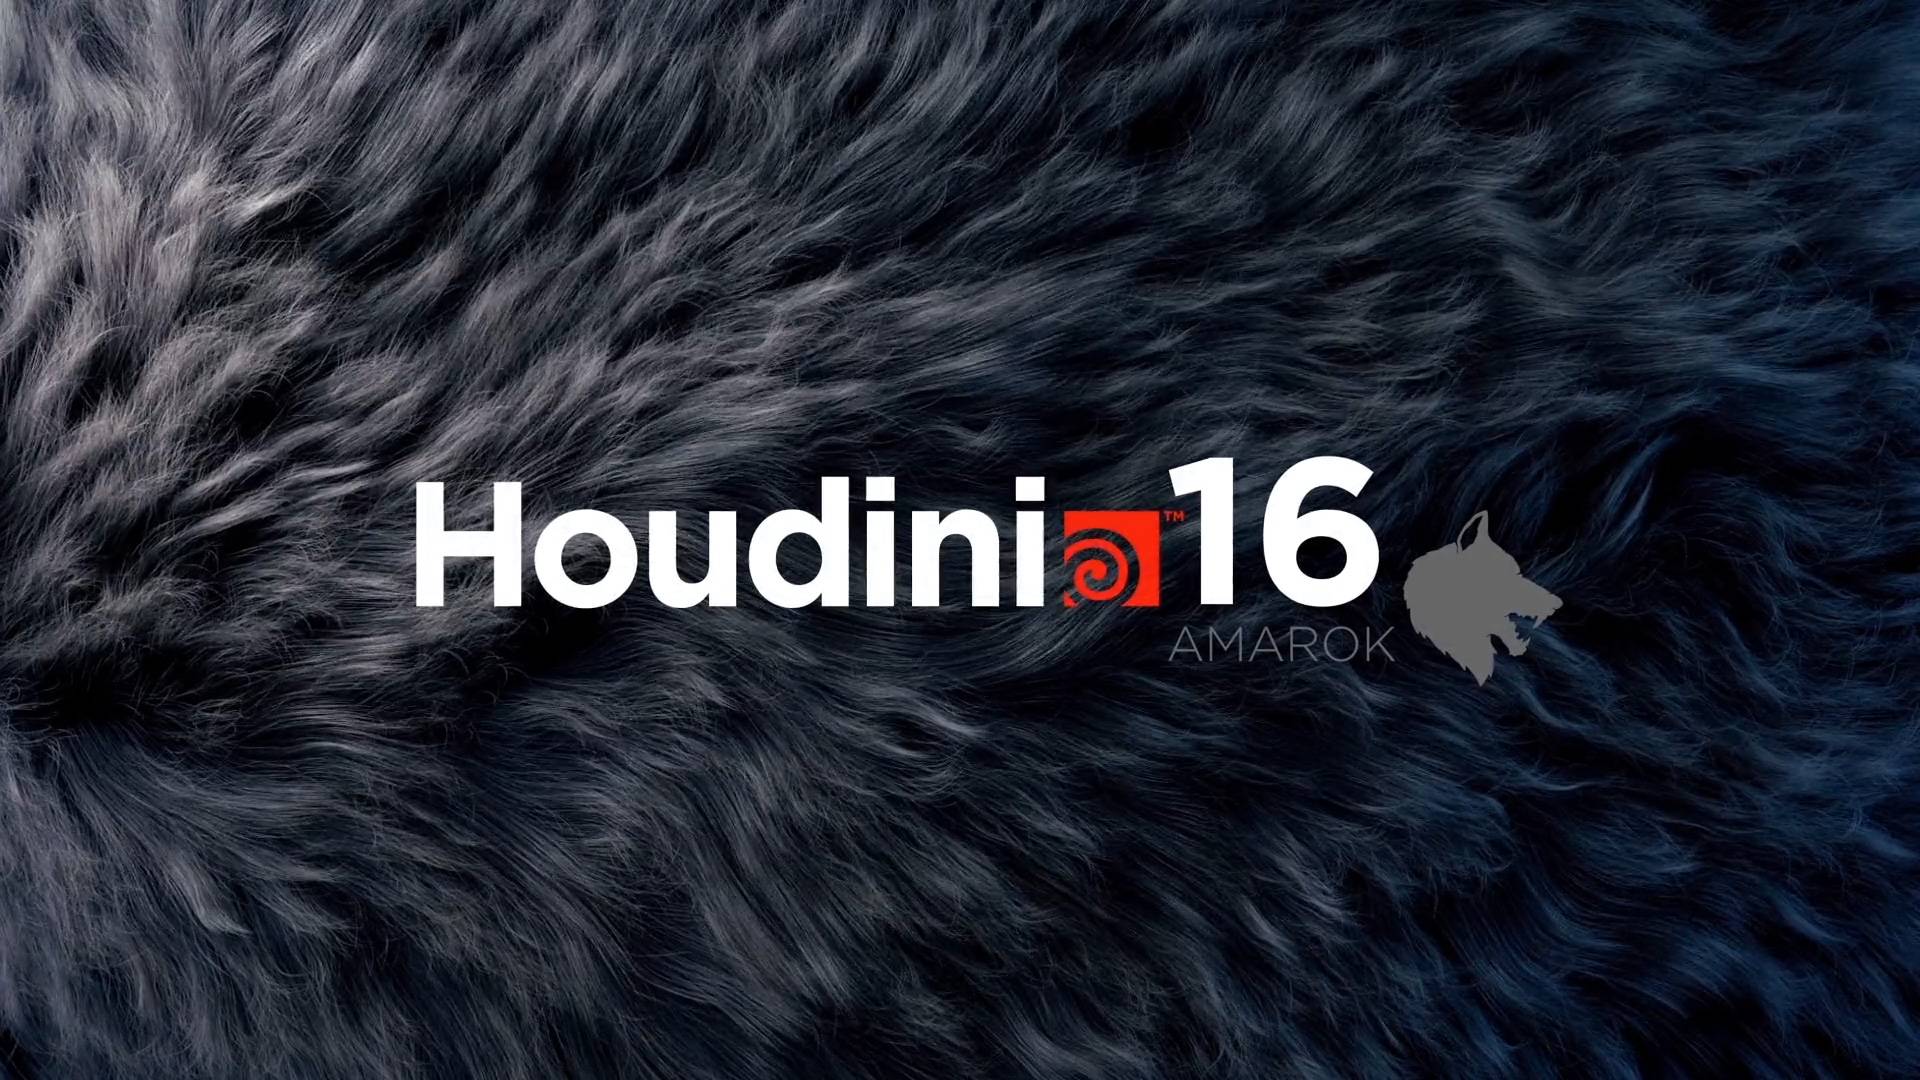 Houdini Fx For Mac